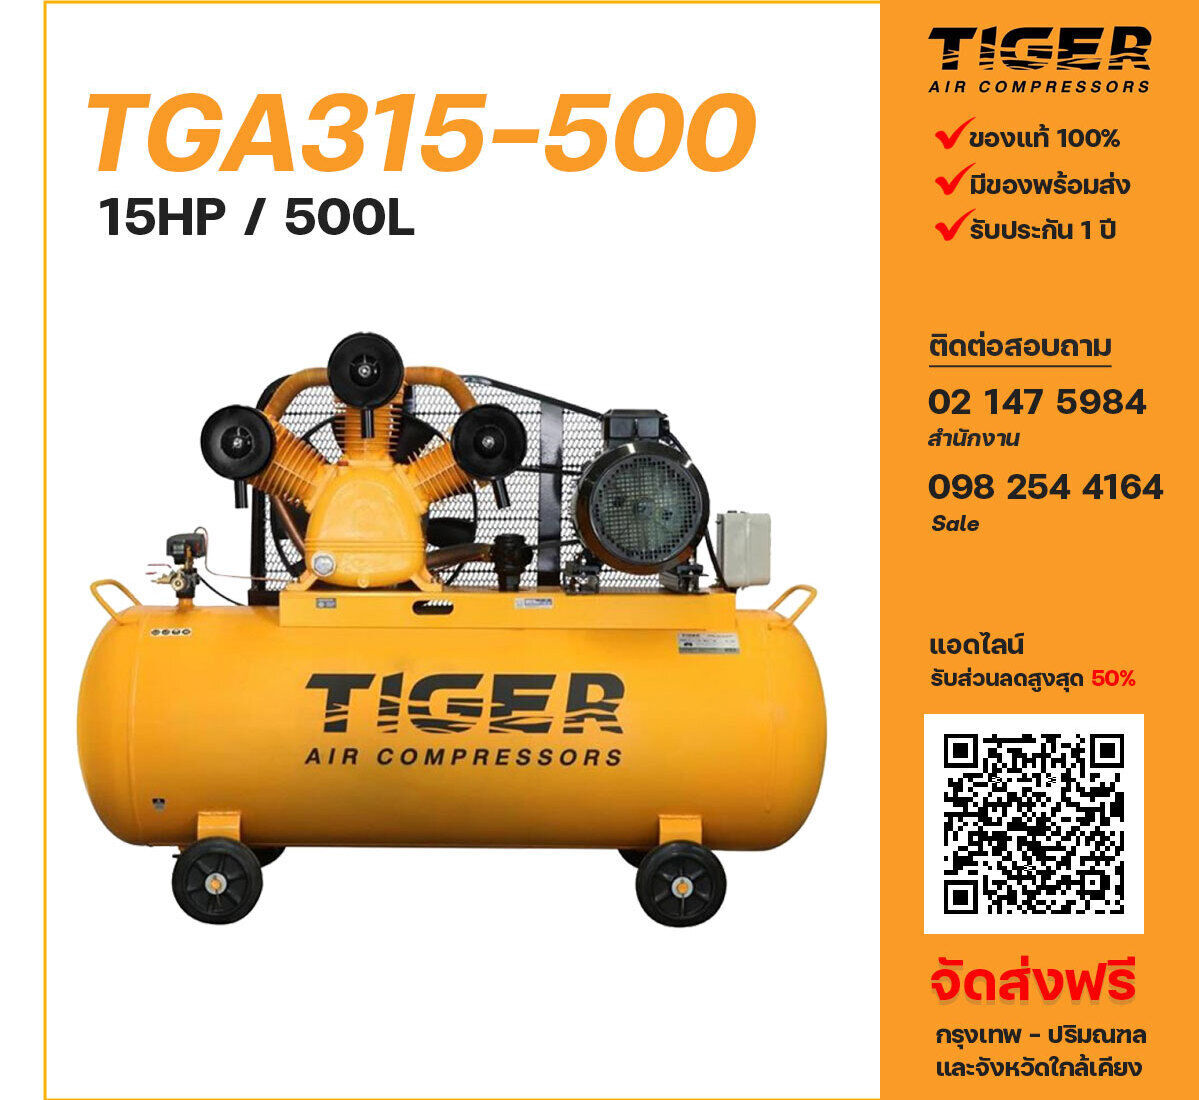 ปั๊มลมไทเกอร์ TIGER TGA315-500 380V ปั๊มลมลูกสูบ ขนาด 3 สูบ 15 แรงม้า 500 ลิตร TIGER พร้อมมอเตอร์ ไฟ 380V ส่งฟรี กรุงเทพฯ-ปริมณฑล รับประกัน 1 ปี